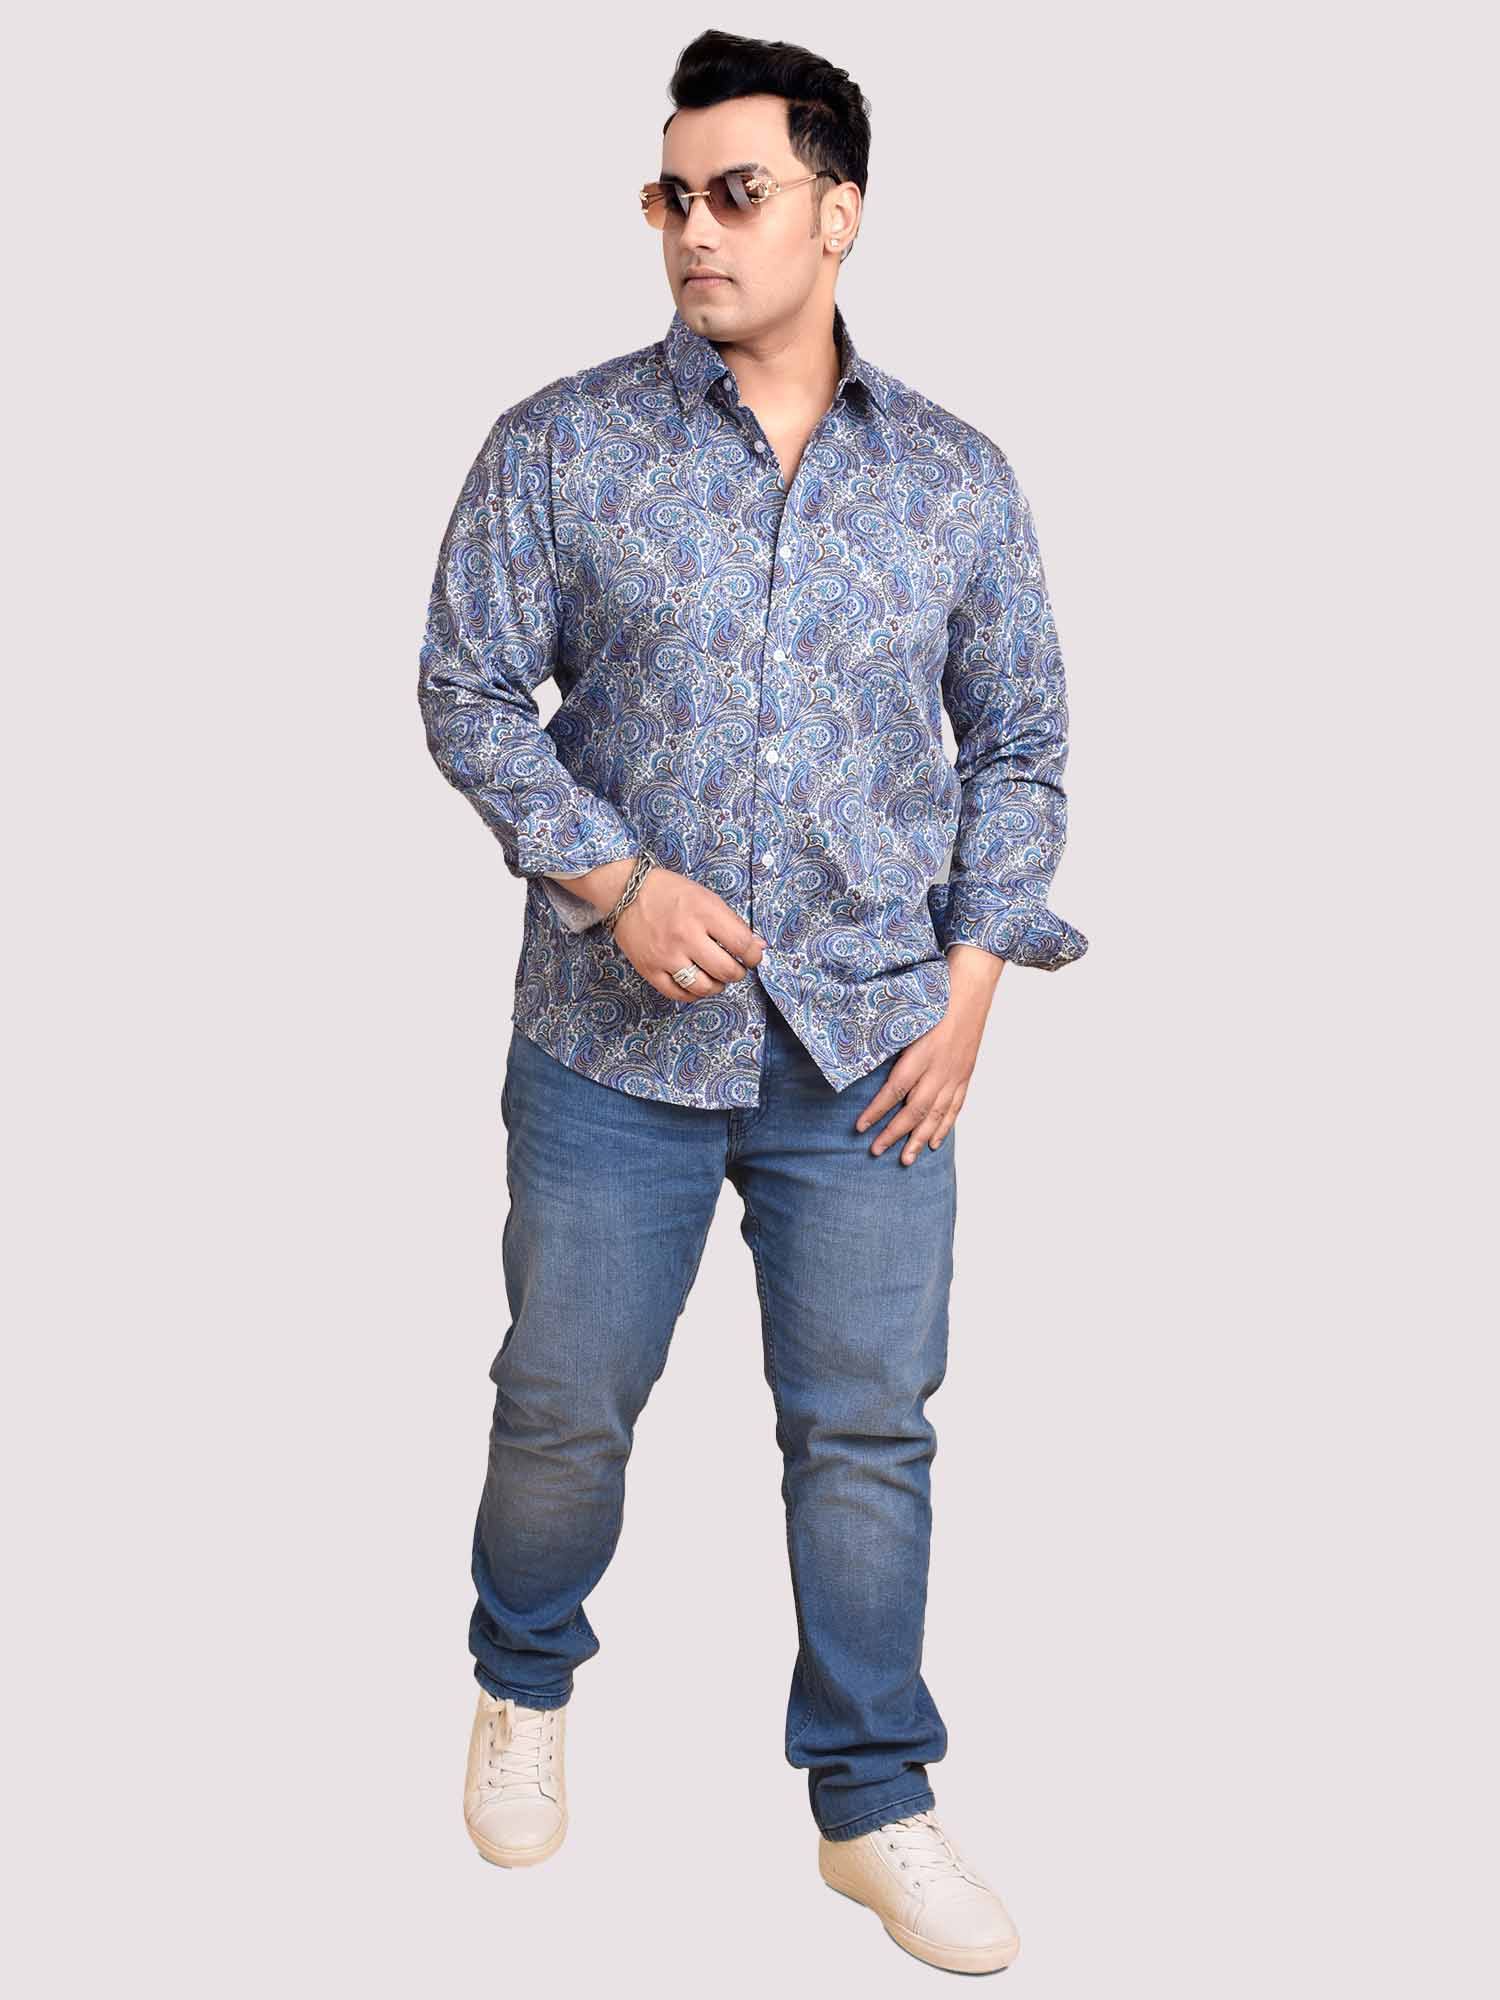 Tini Paisley Digital Printed Shirt Men's Plus Size - Guniaa Fashions